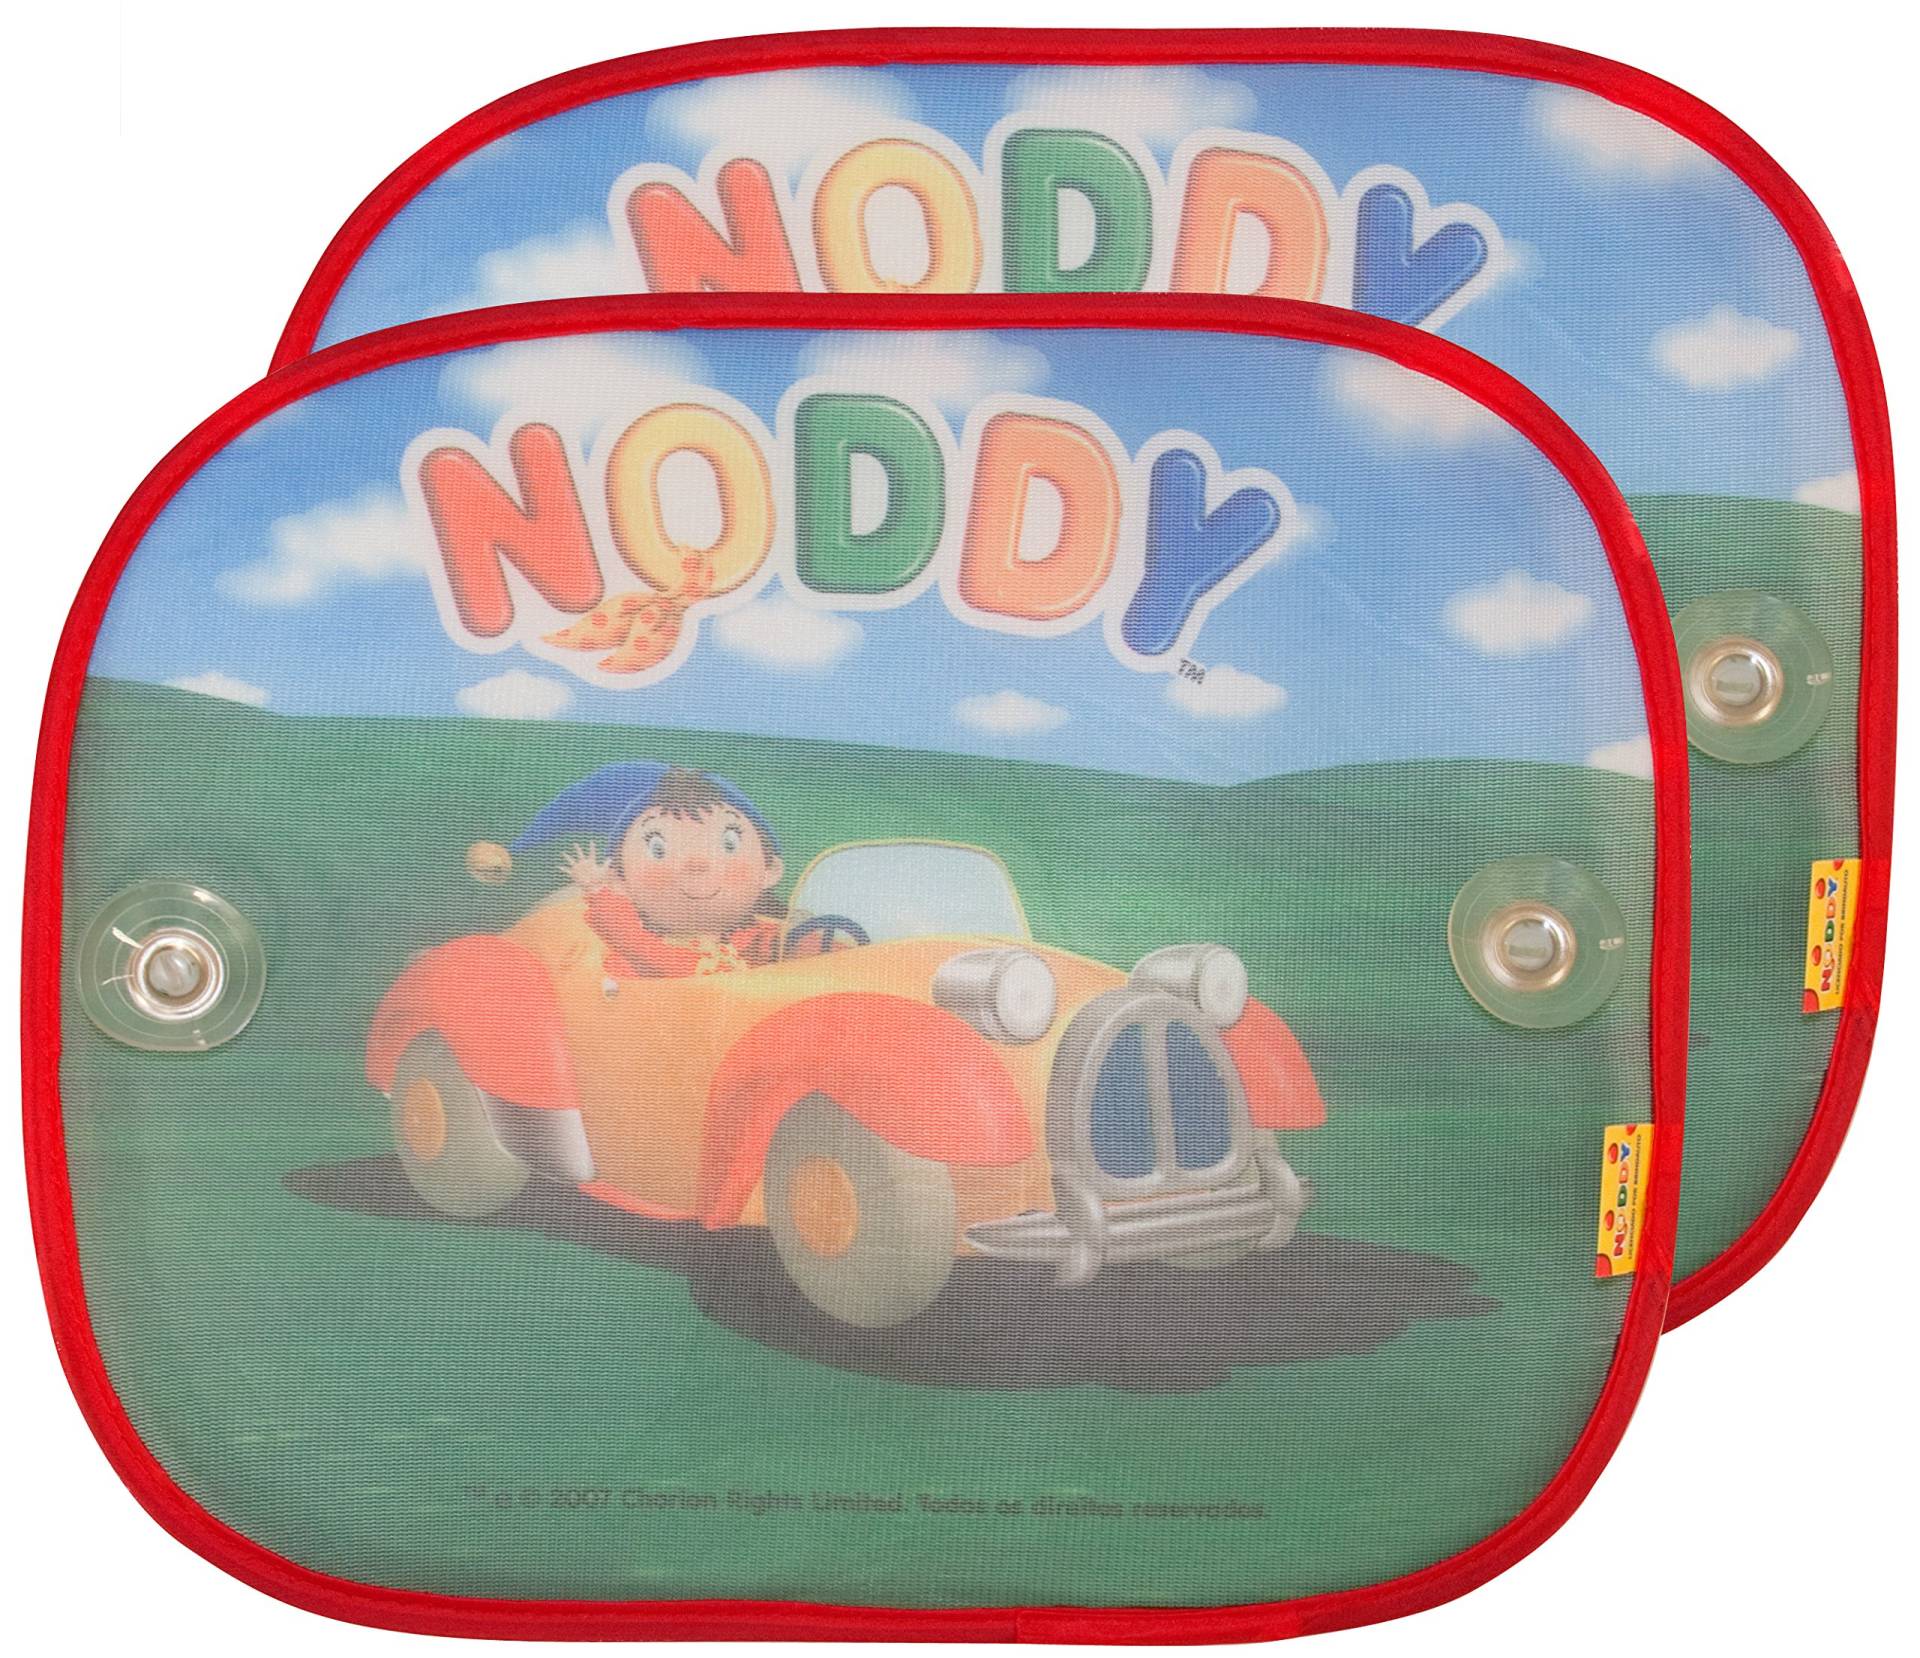 Noddy ERMA Sonnenschutz Auto Saugnäpfen Sonnenschutz 2er Pack von Noddy